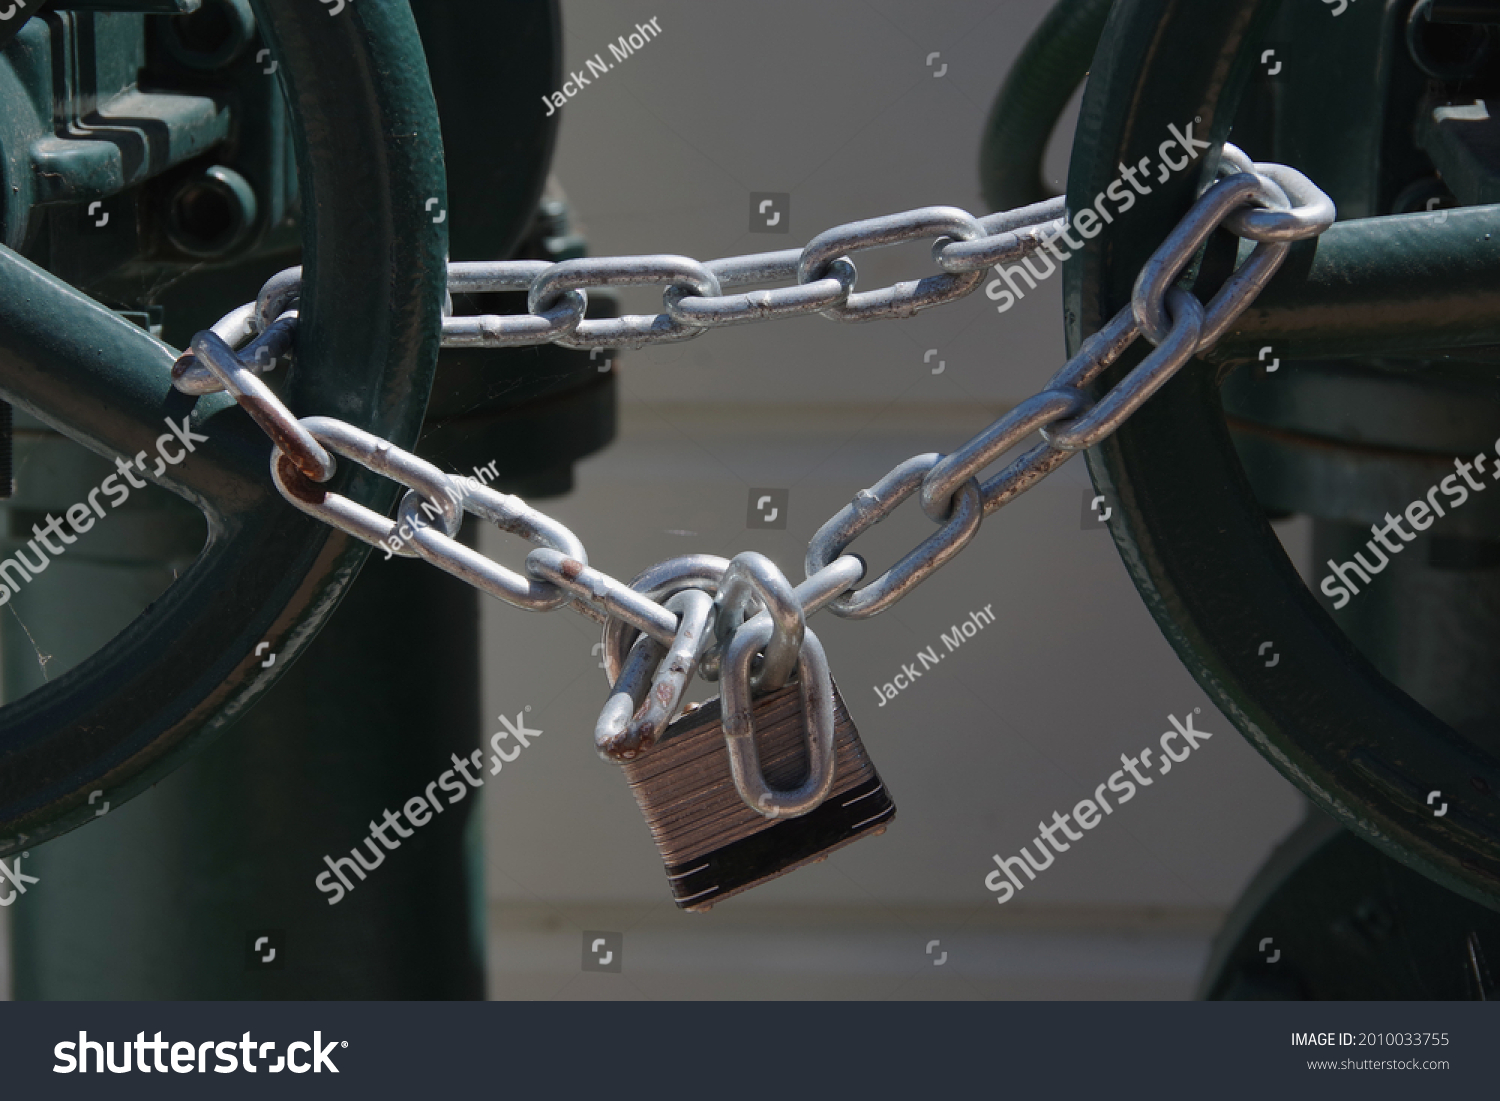 Padlock and heavy chain locking main water valves #2010033755